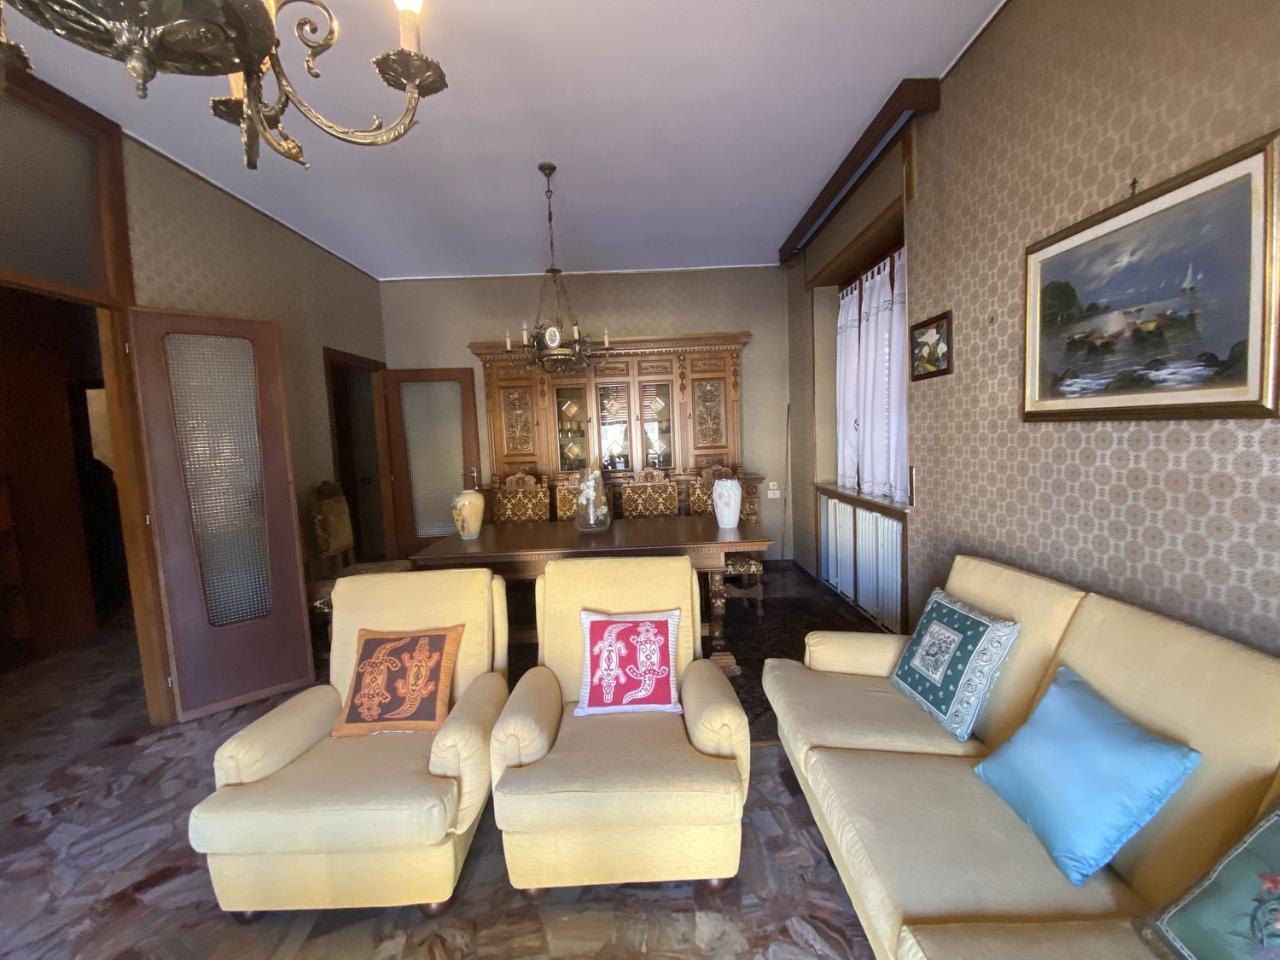 Villa in vendita a Galliate